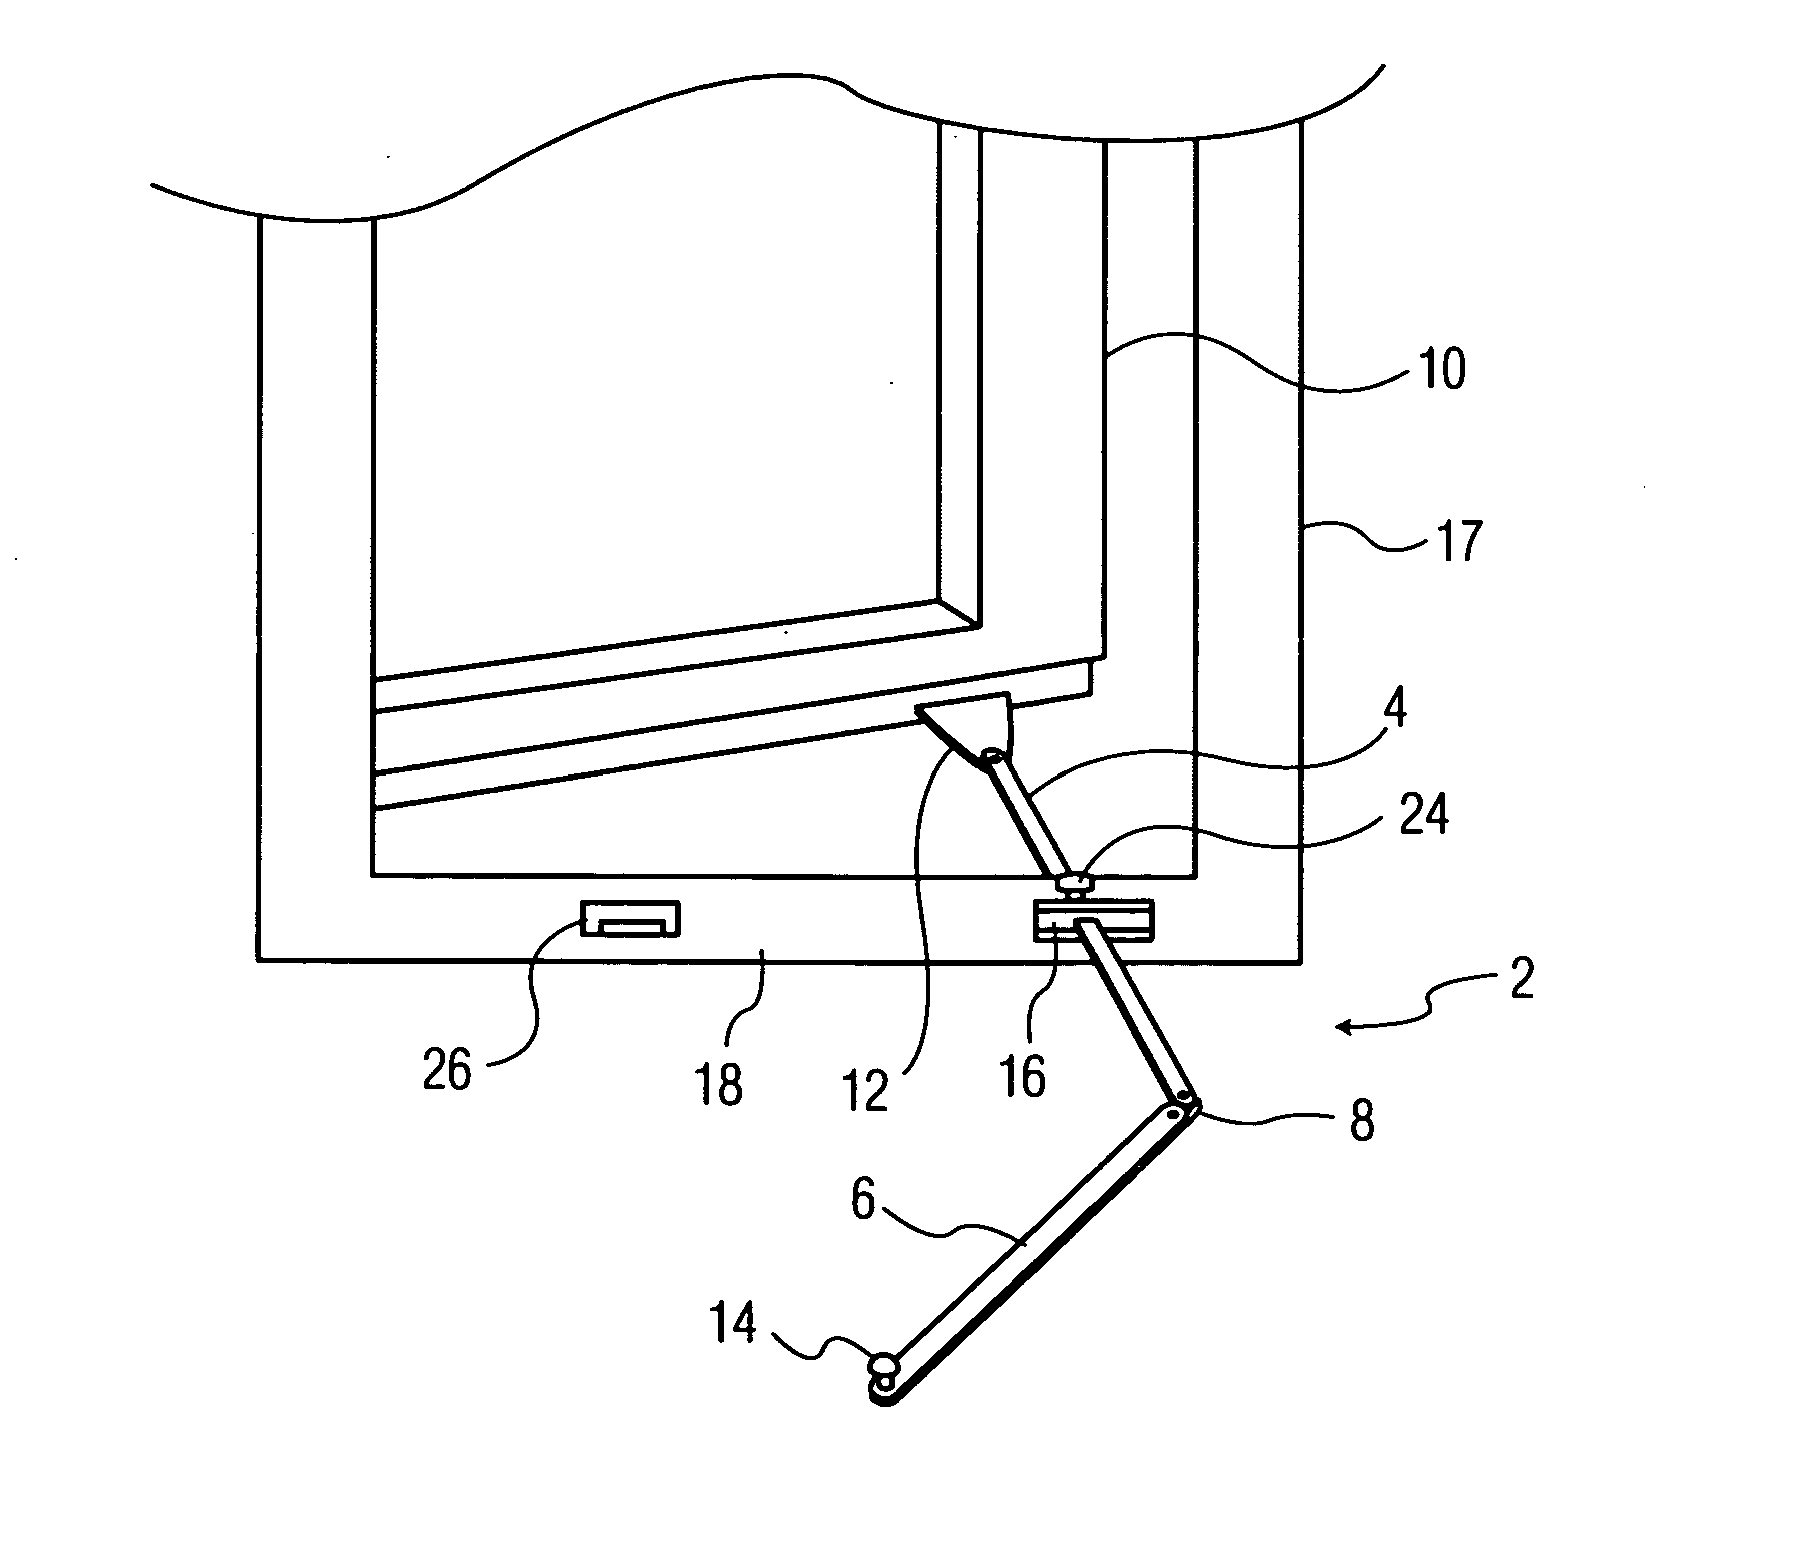 Folding push bar mechanism for casement windows